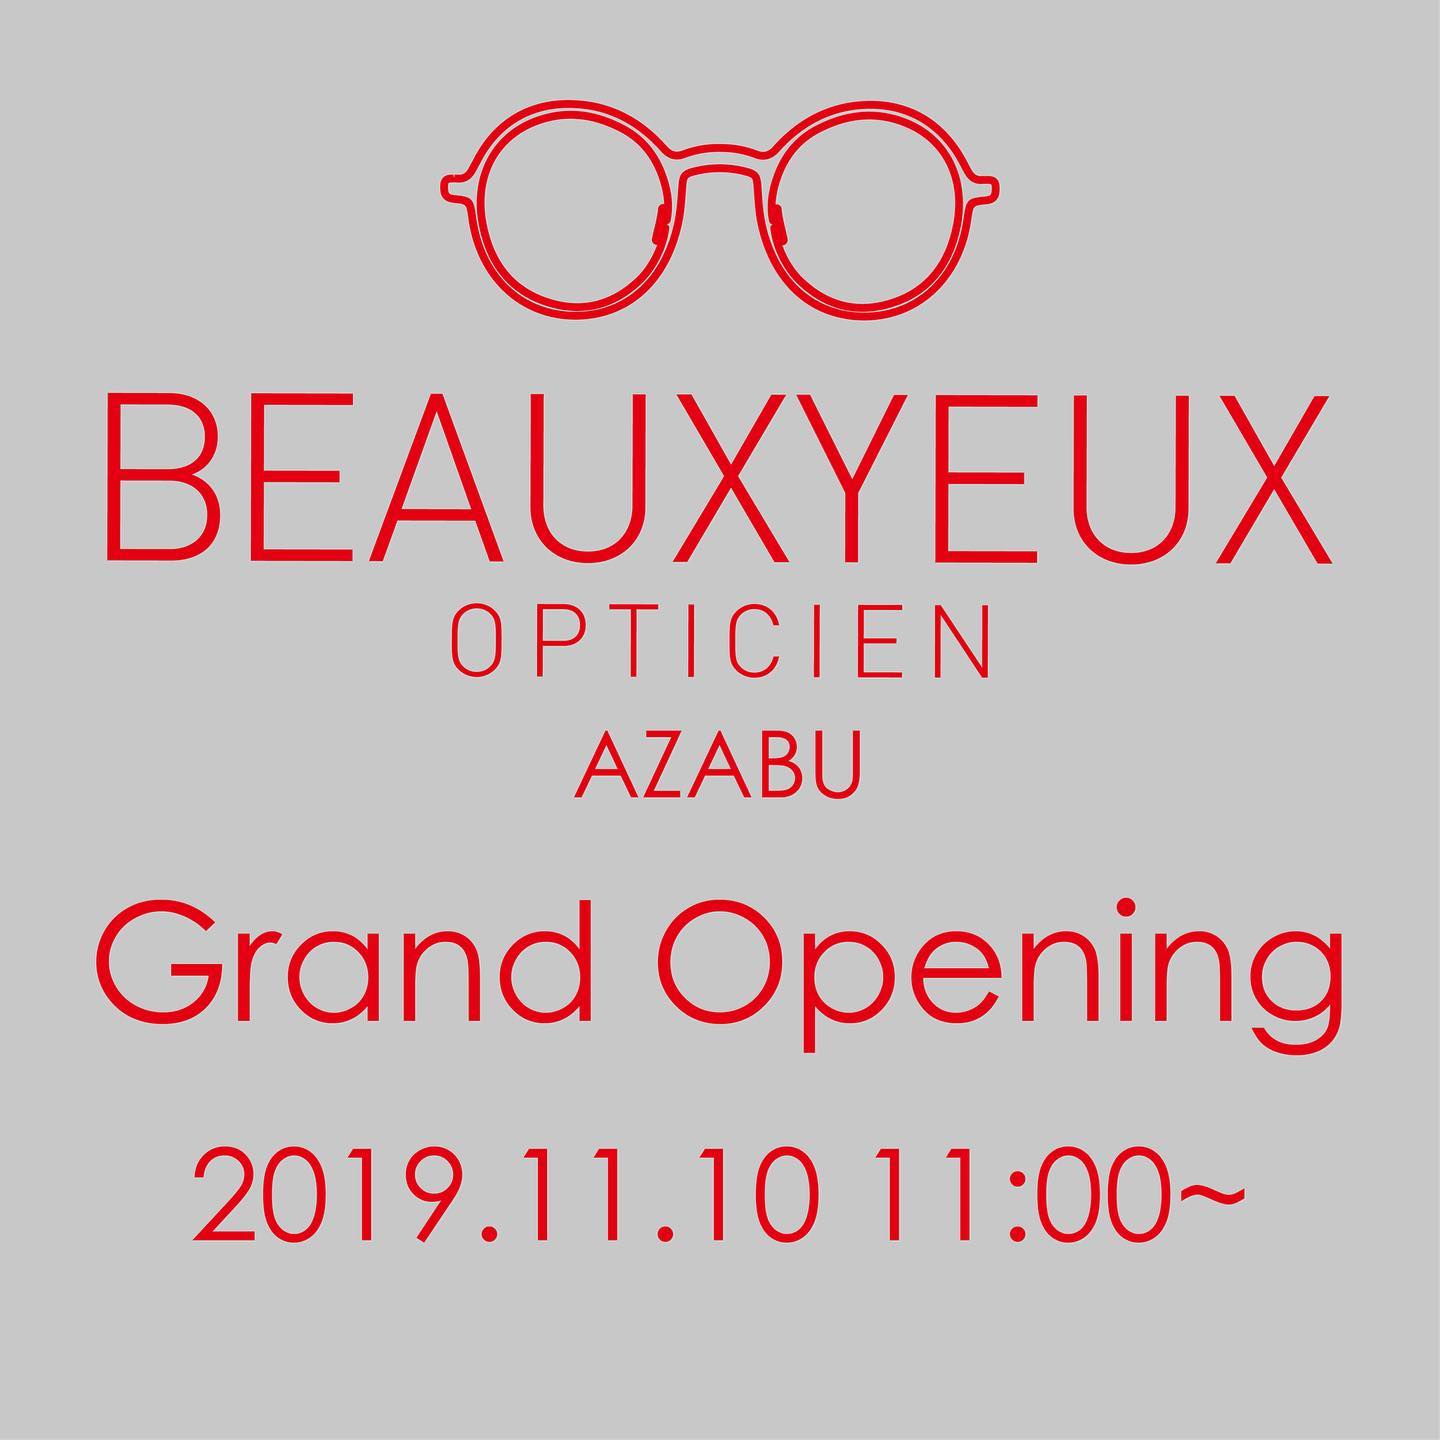 この度、眼鏡店ボズュー( @beauxyeux_jiyugaoka )は麻布十番に新店舗を11月10(日)AM11:00よりオープンします！皆様のご来店をスタッフ一同心よりお待ちしております！詳細はオフィシャルサイトにて公開中です！
・
・
・